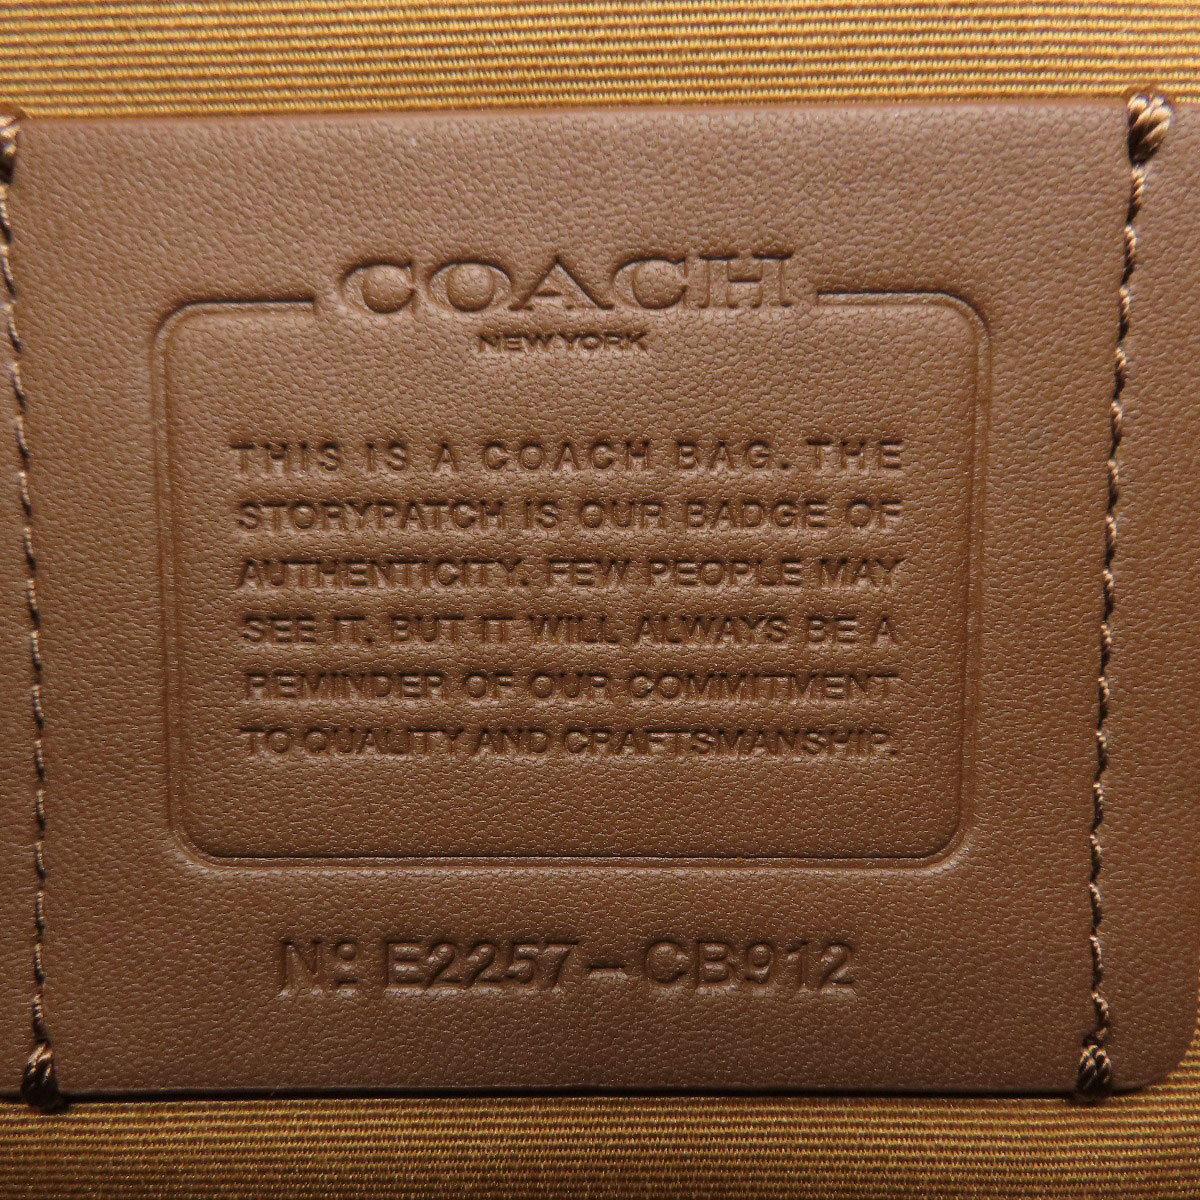 COACH Coach CB912wa- Len ремень сумка большая сумка кожа женский б/у 